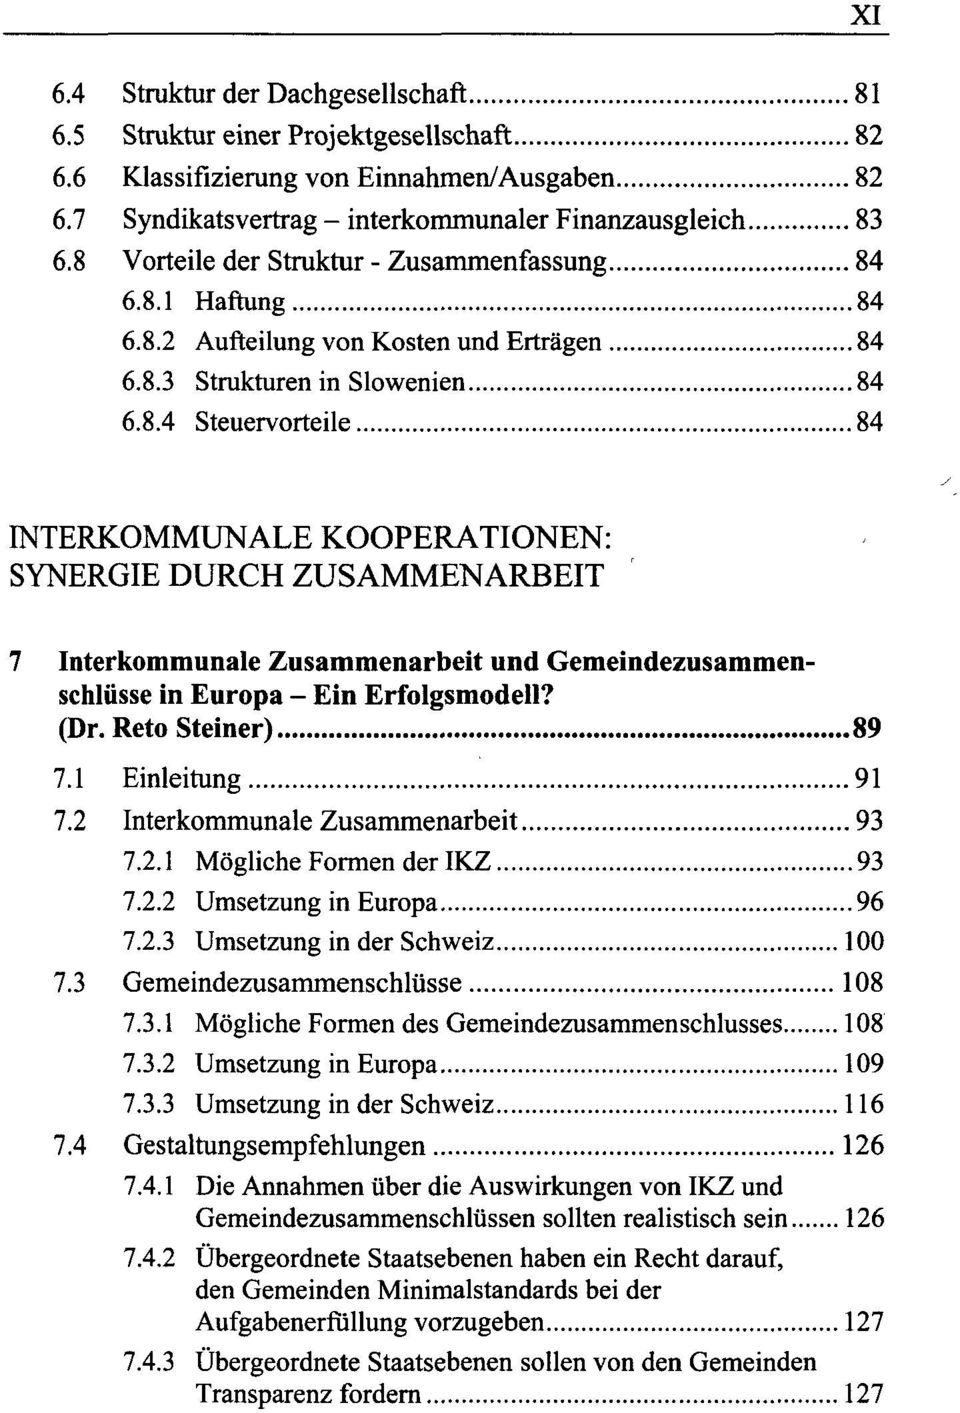 (Dr. Reto Steiner) 89 7.1 Einleitung 91 7.2 Interkommunale Zusammenarbeit 93 7.2.1 Mögliche Formen der IKZ 93 7.2.2 Umsetzung in Europa 96 7.2.3 Umsetzung in der Schweiz 100 7.